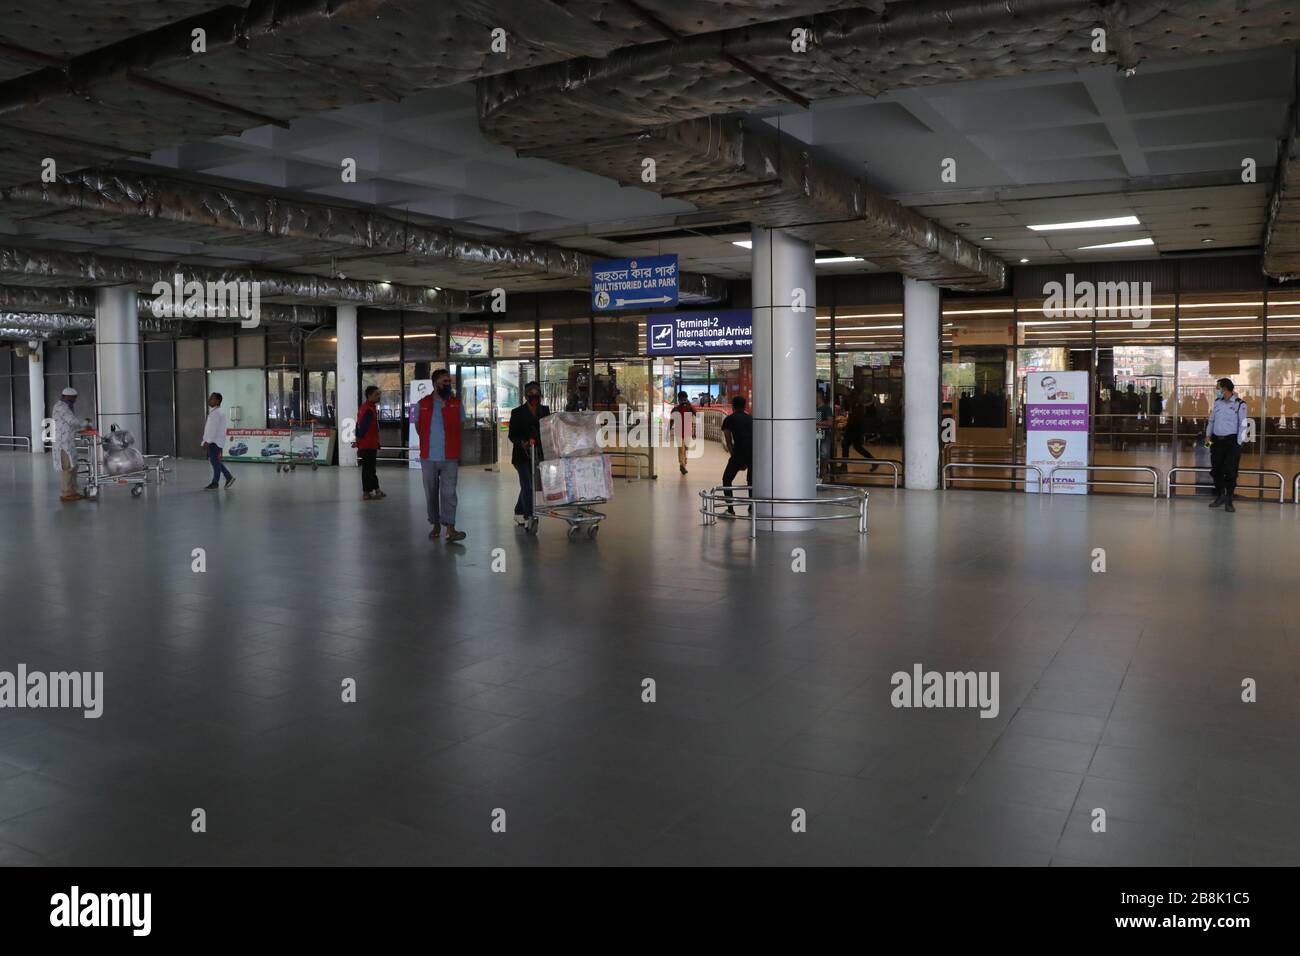 Covid, 19 13. märz 2020 der internationale Flughafen dhaka bangladesch Hazrat shahjalal in der Hauptstadt hat gestern fast ein verlassenes Aussehen als Frequenz-Flig Stockfoto